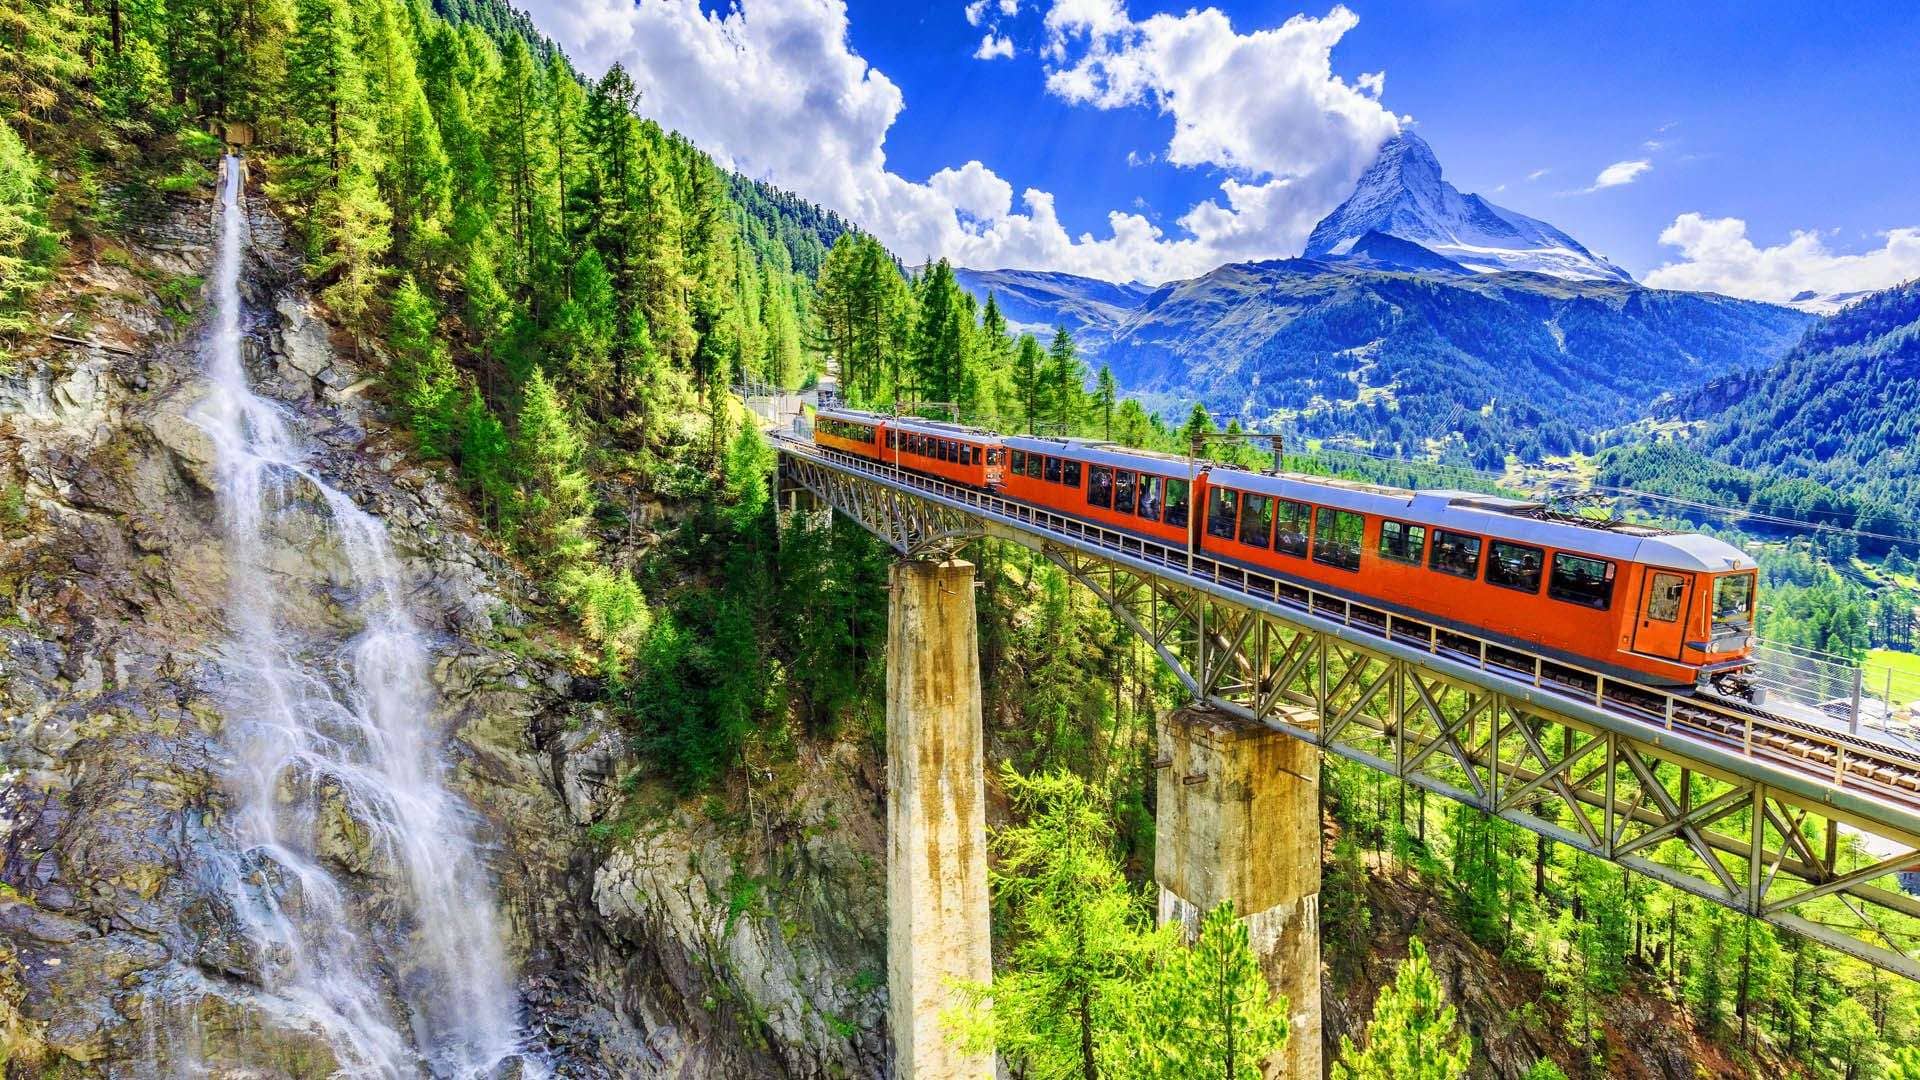 Scenic Train Ride to Interlaken